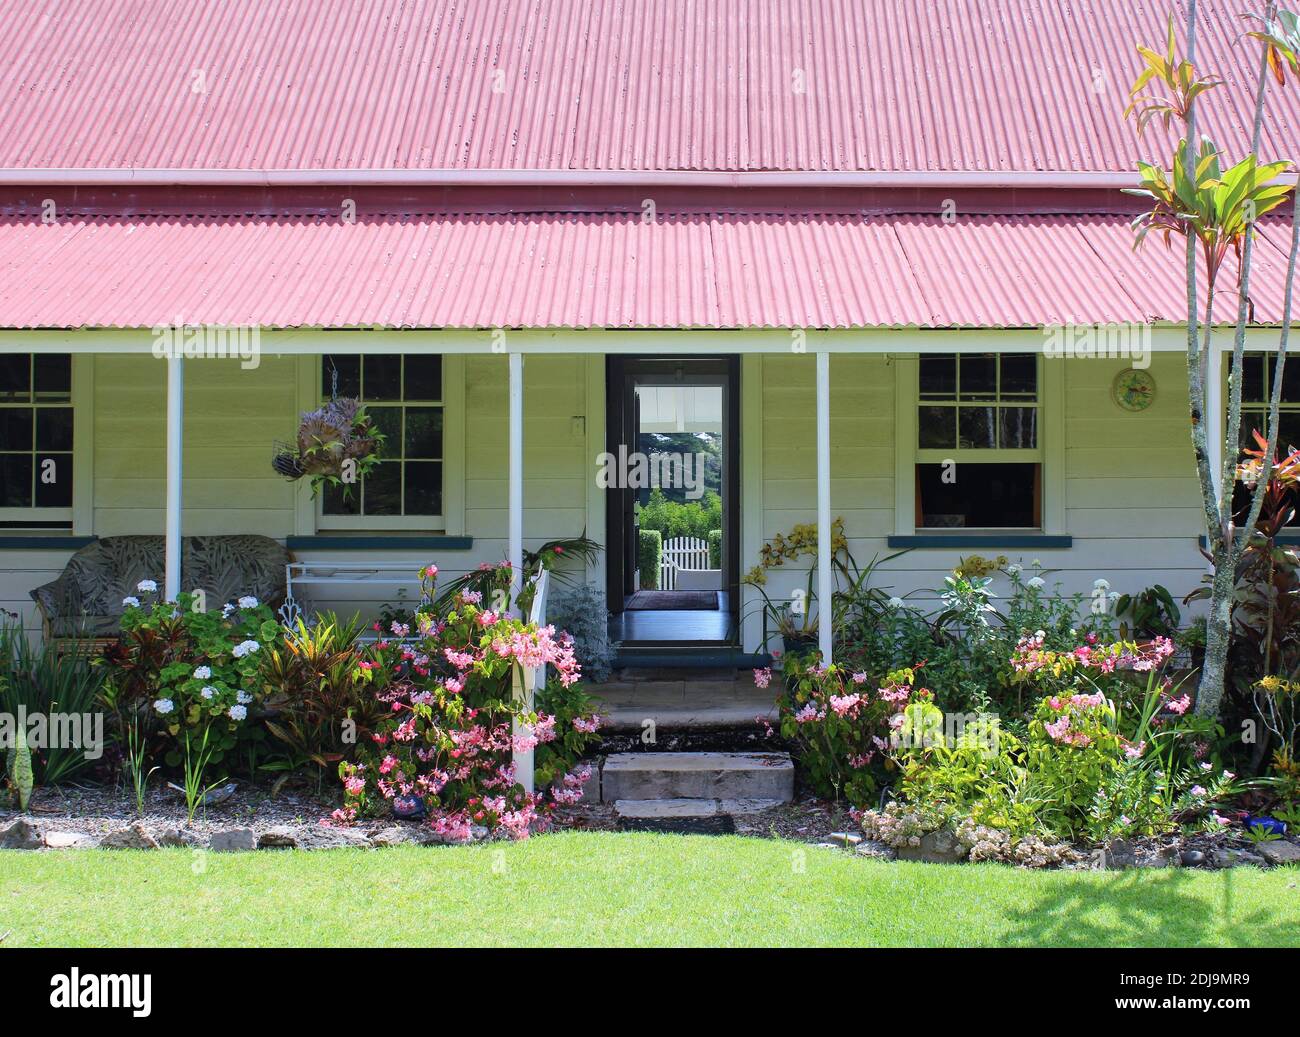 Norfolk Island, Old Bailey Homestead (détail de l'entrée), Pitcairn Settlers Village. Mutinerie du Homestead des descendants de Bounty sur l'île Norfolk. Banque D'Images